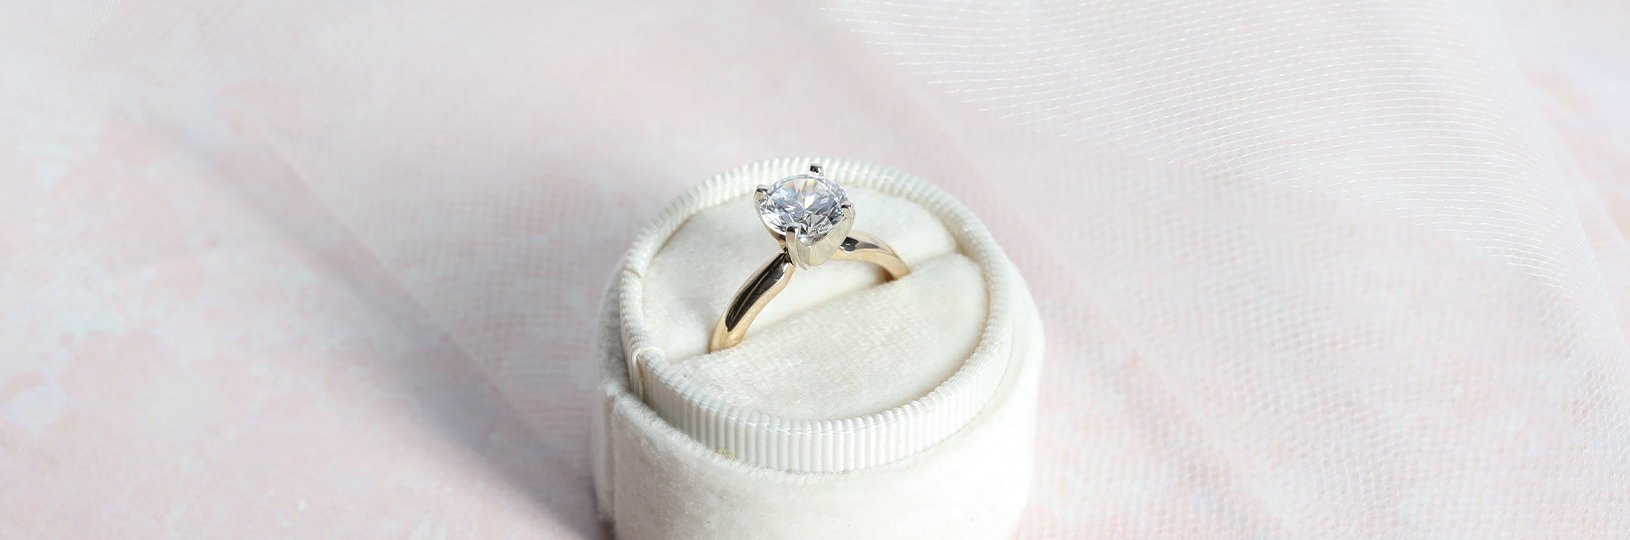 12FIFTEEN Diamonds engagement ring